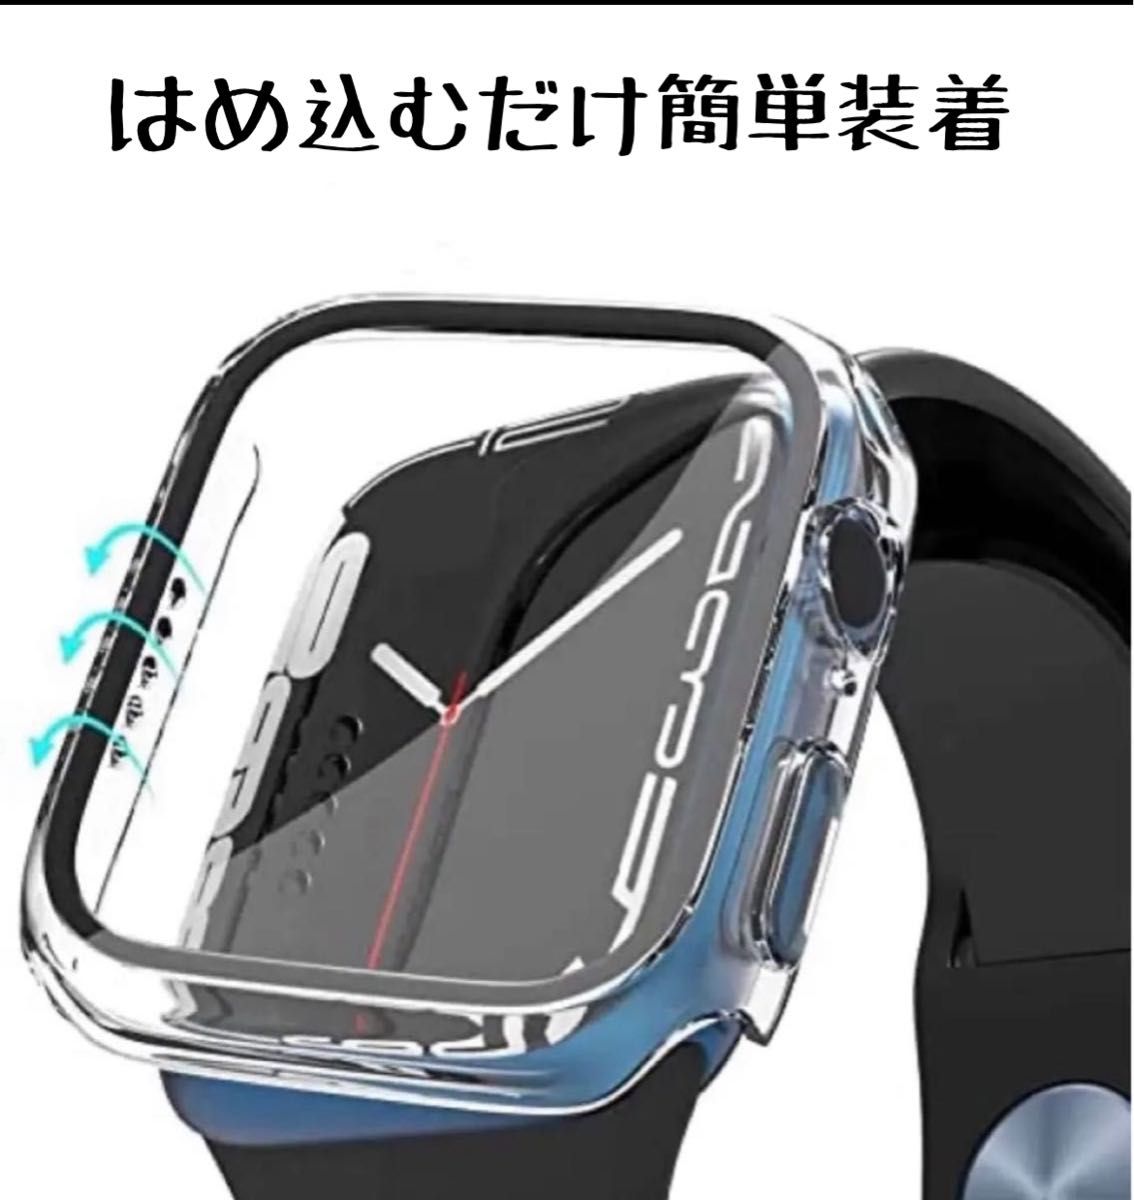 アップルウォッチ カバー Apple Watch 表面カバー AppleWatch 40㎜ 保護カバー 防水 クリアー 腕時計